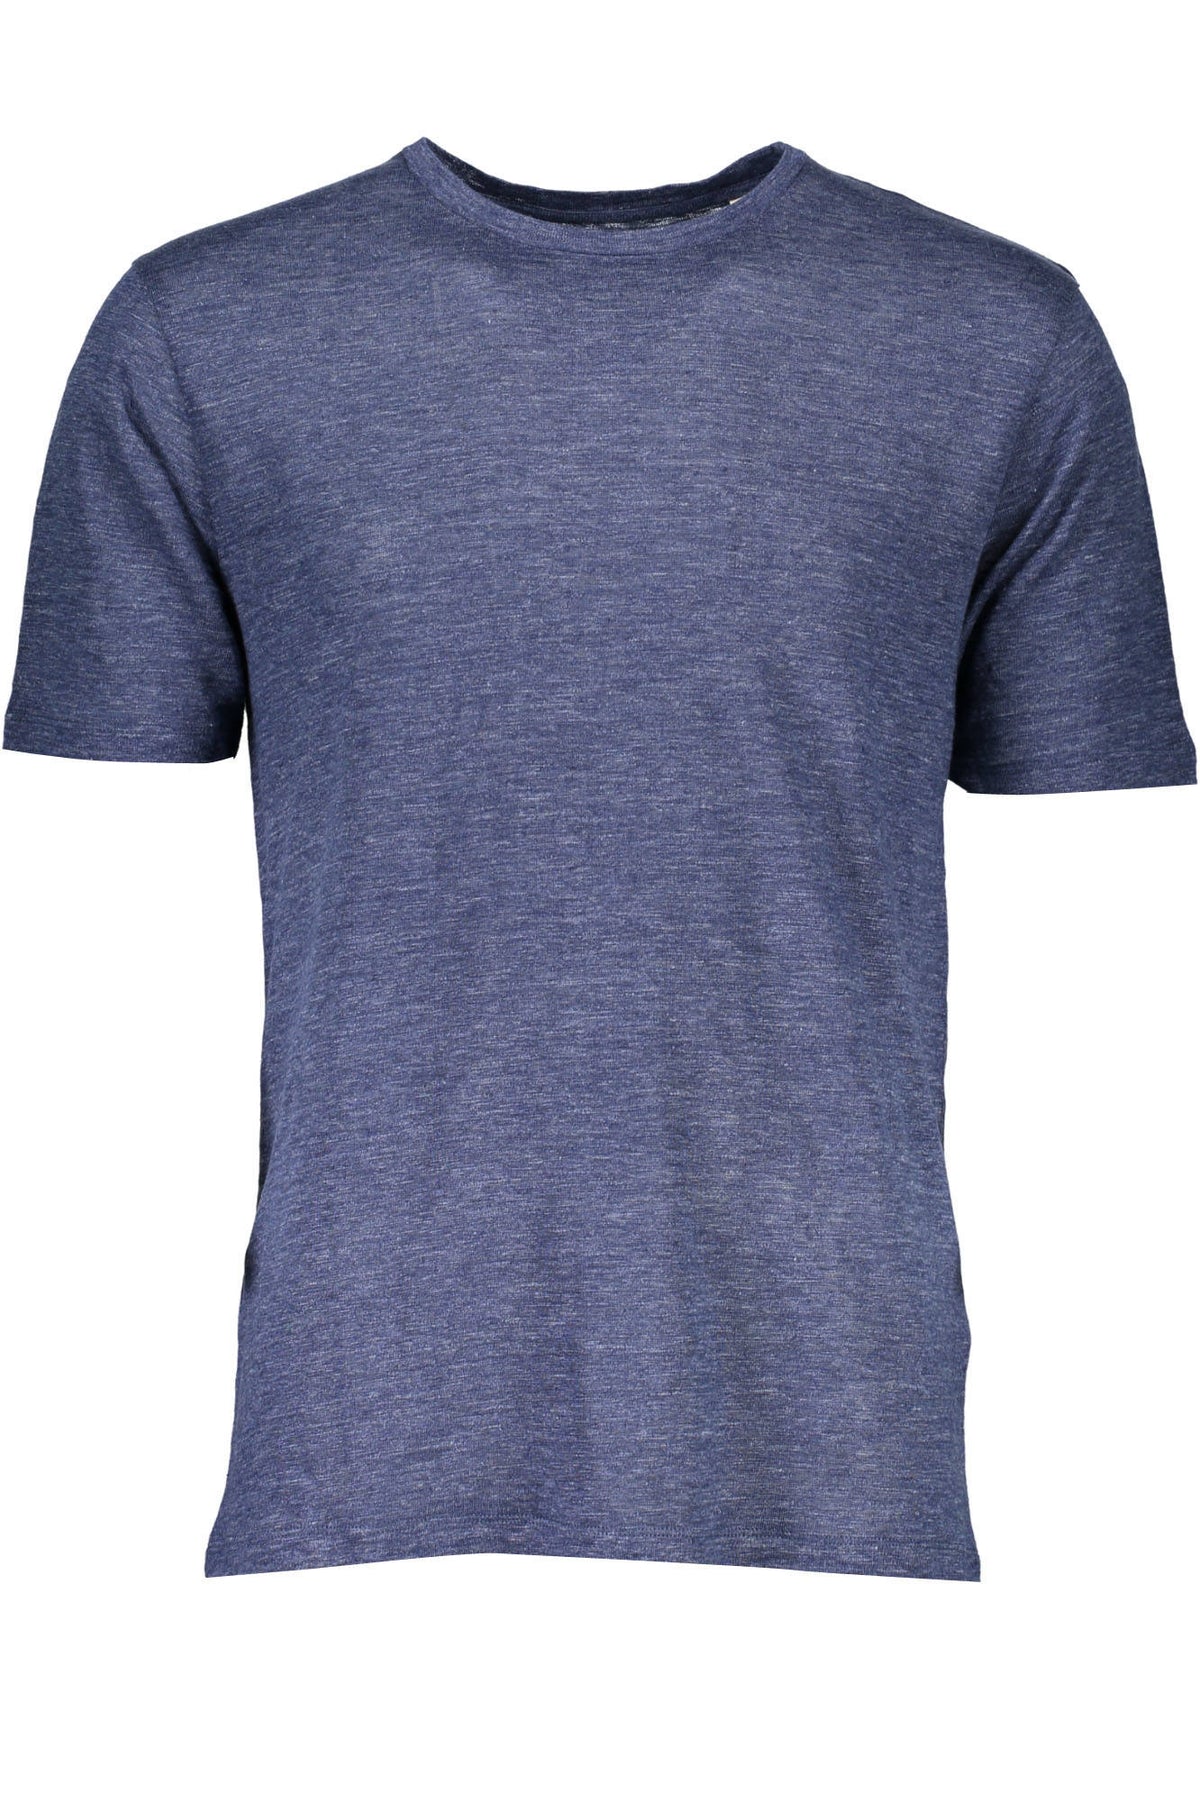 Gant Herren T-Shirt Sweatshirt mit Rundhalsausschnitt, kurzarm